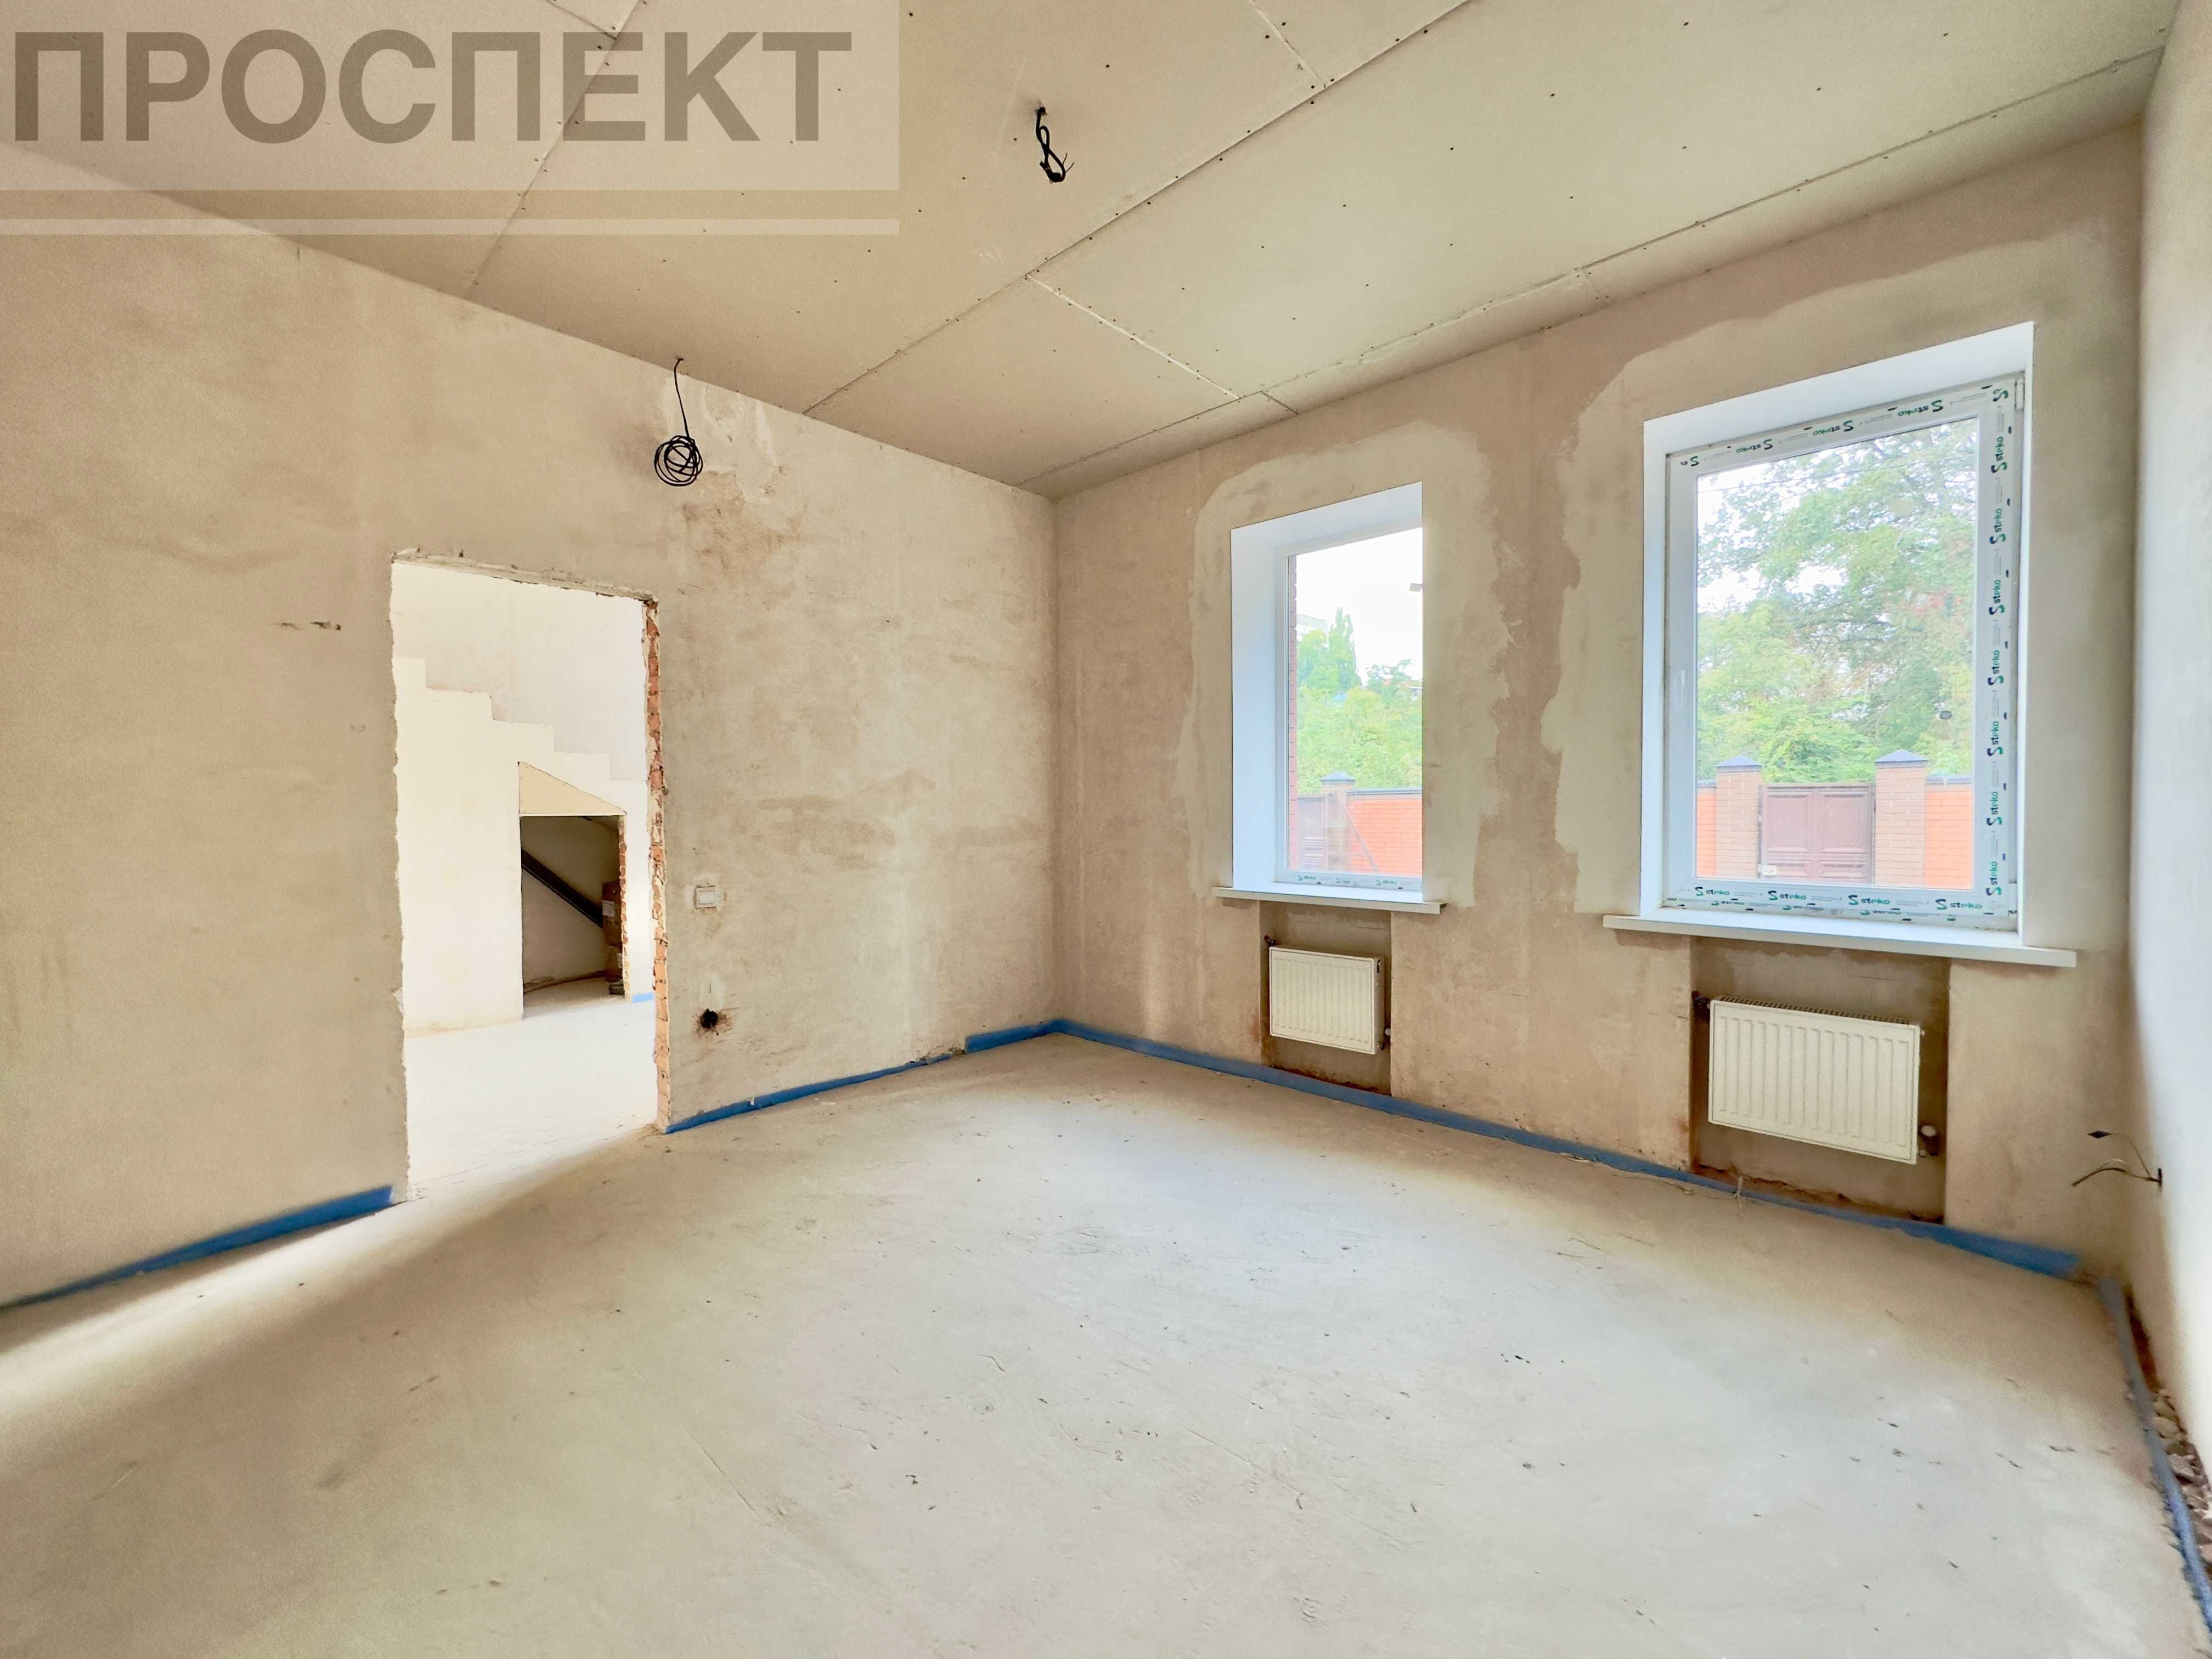 Продам новий будинок площею 300м² в центрі міста (р-н Парка Кожедуба)